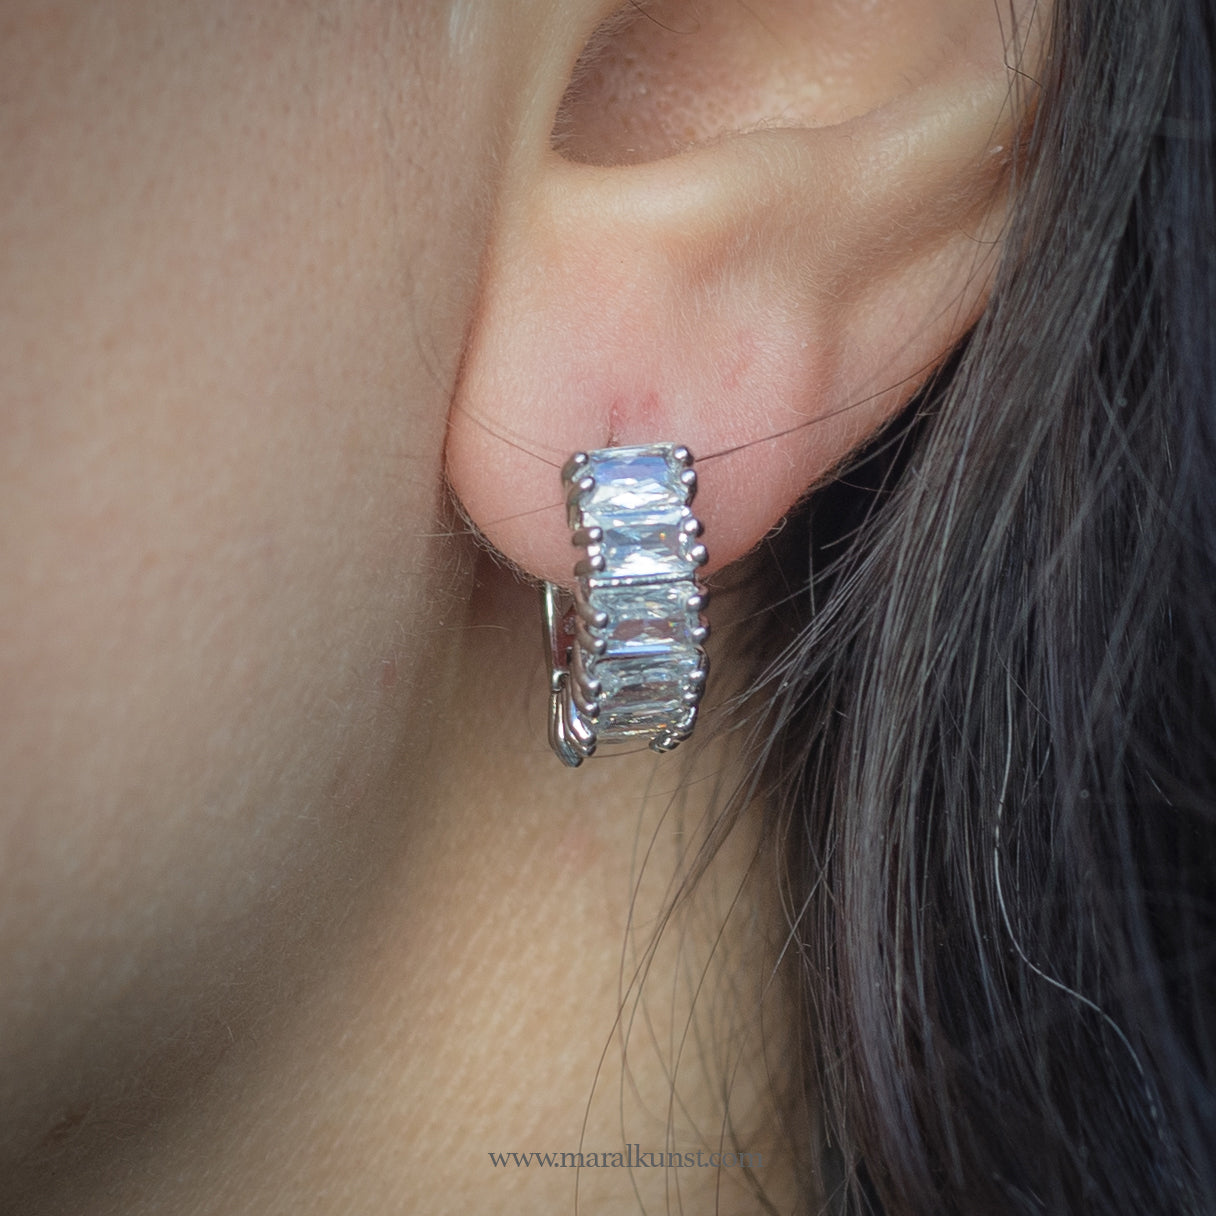 Thick hoop stainless steel earrings